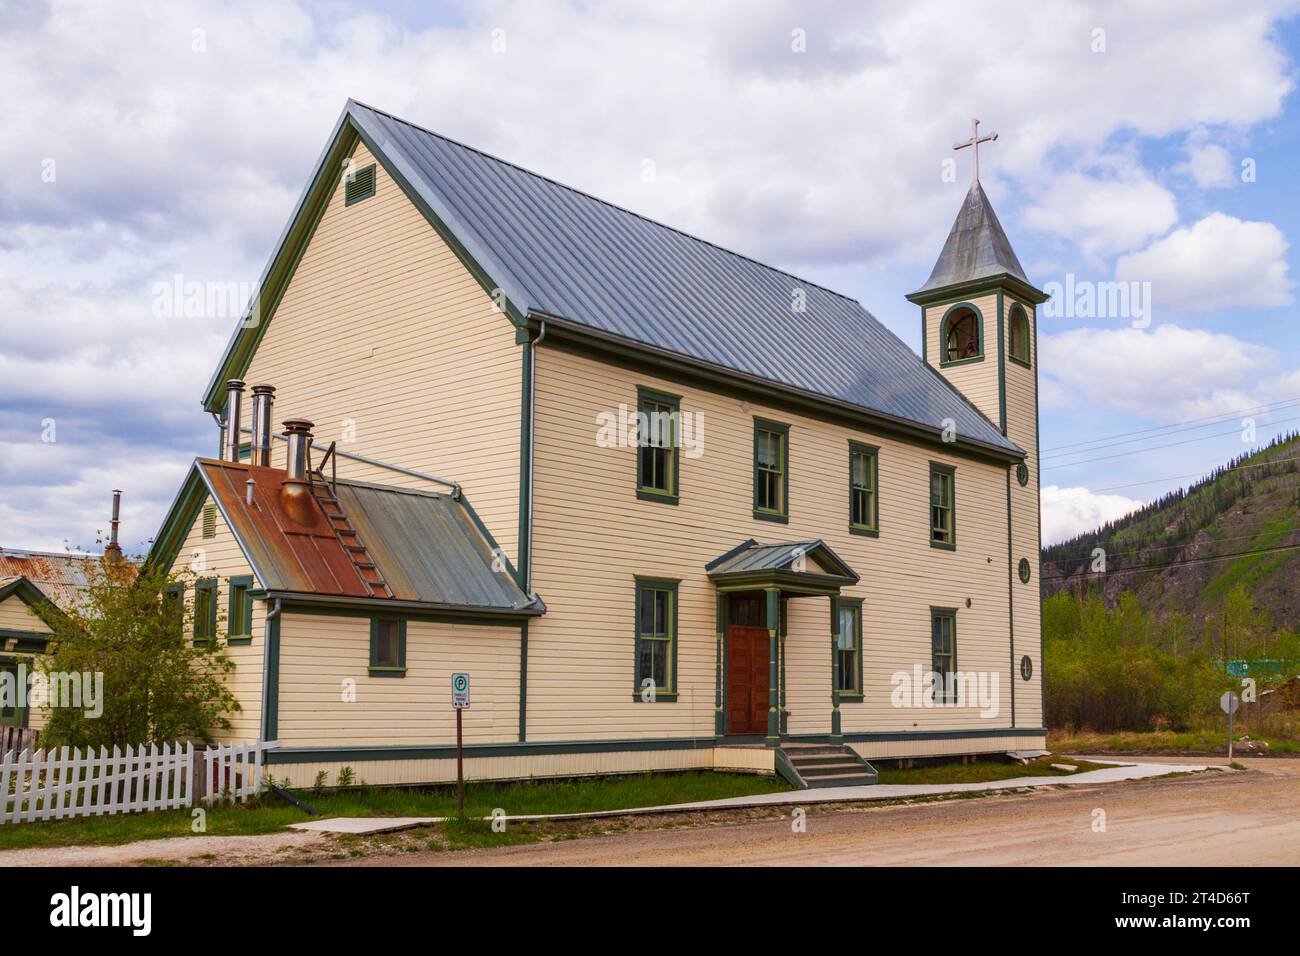 Dawson City nel territorio dello Yukon, Canada, ha un clima subartico e una popolazione di circa 1900 abitanti tutto l'anno. St La Chiesa cattolica di Mary. Foto Stock